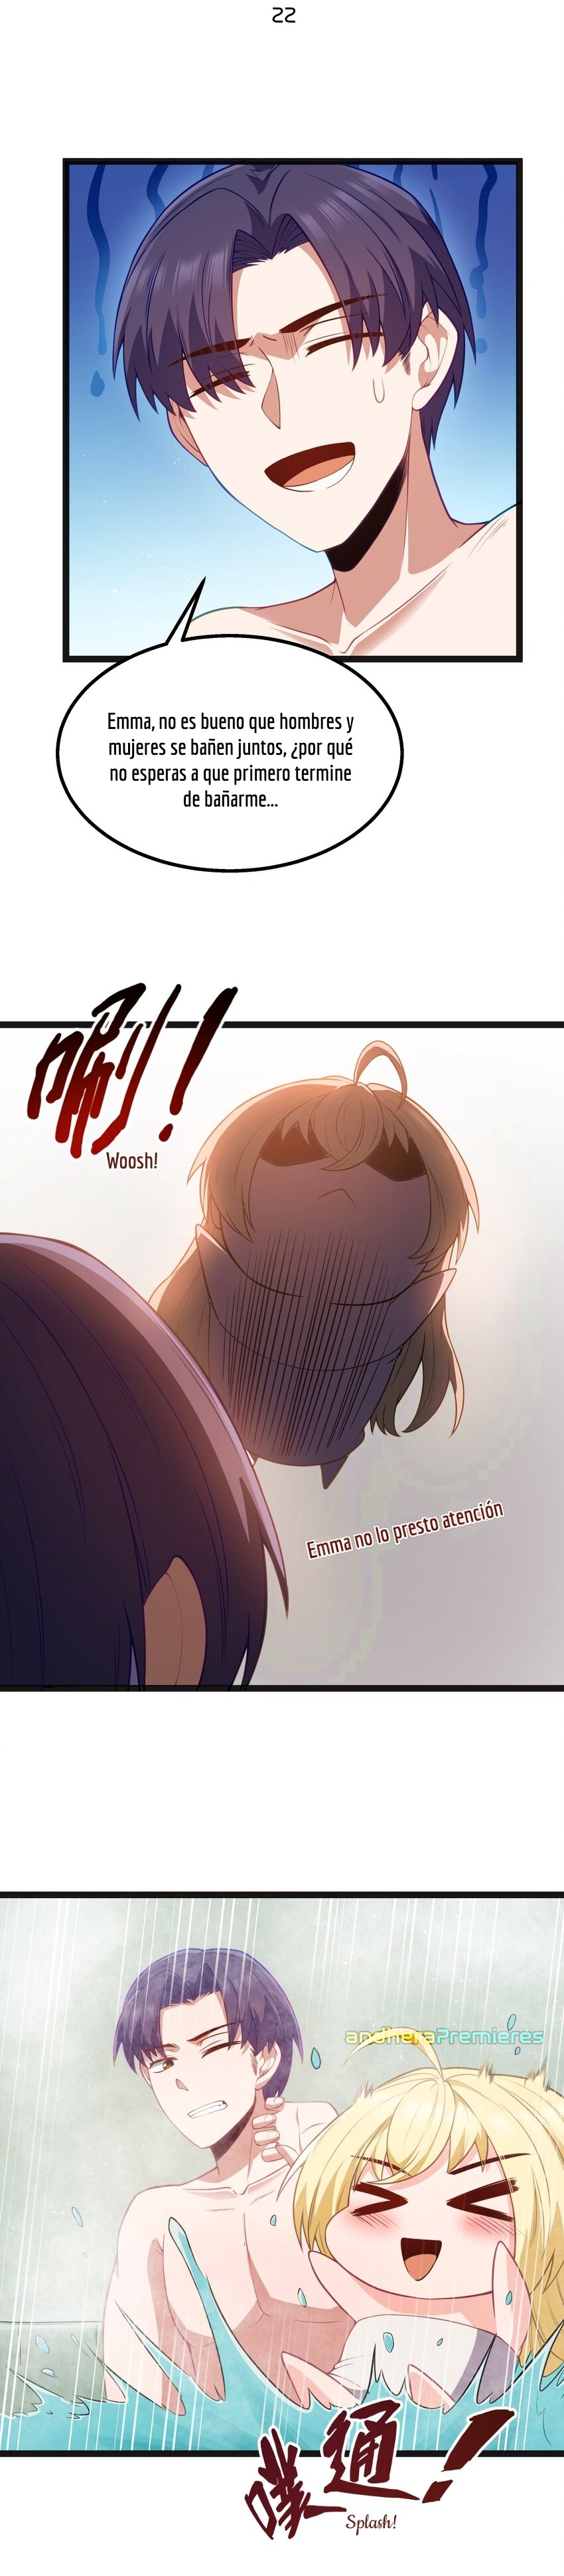 Manga El Héroe de la Avaricia Chapter 22 image number 12